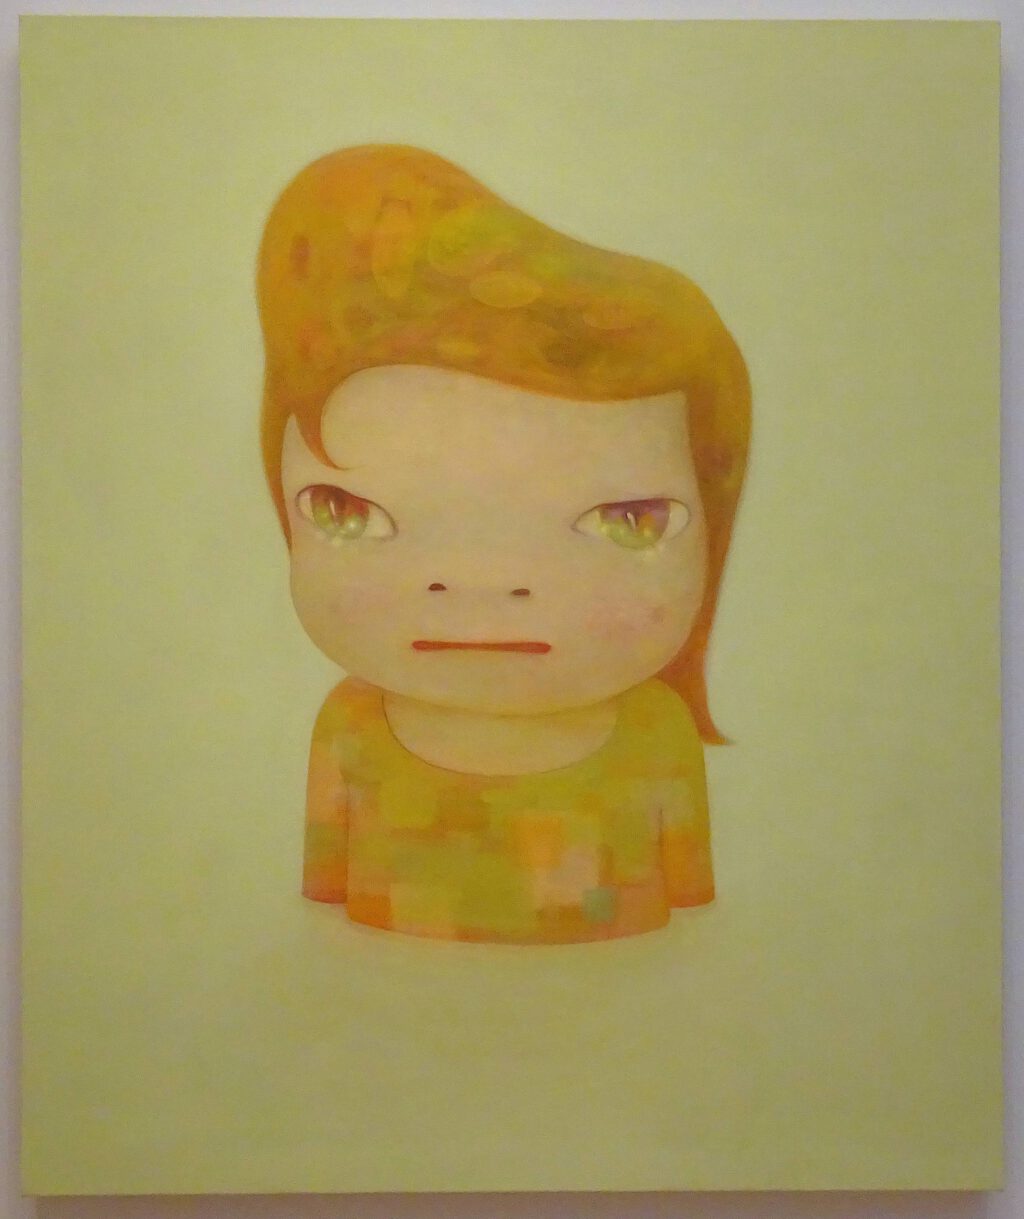 奈良美智 NARA Yoshitomo 「ブランキー」 (Blankey (English) ; 布兰奇 (簡体) ) 2012. Acrylic on canvas, 194.8 x 162 cm. Private collection